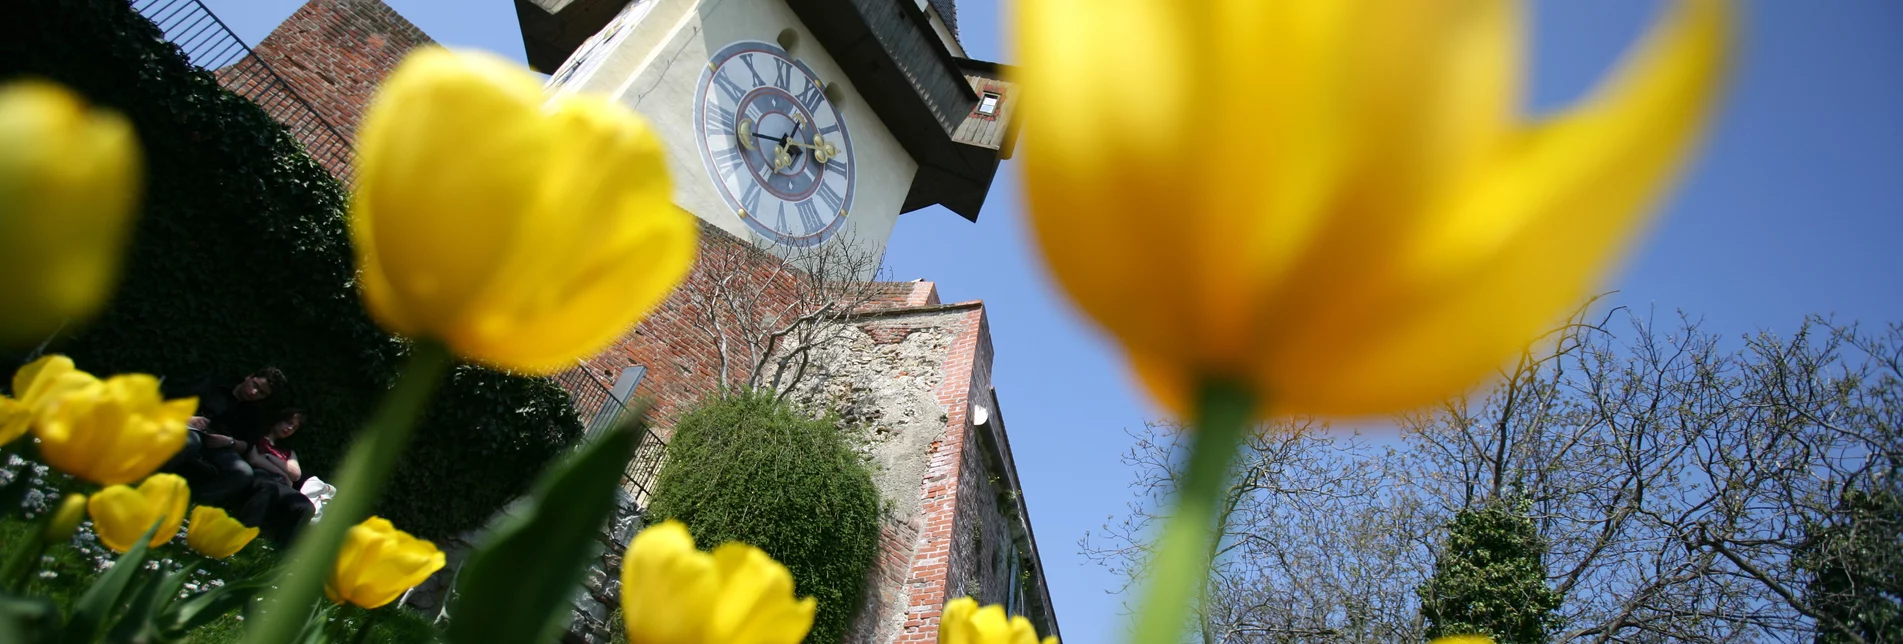 Uhrturm mit Tulpenbeet | © Graz Tourismus | Harry Schiffer